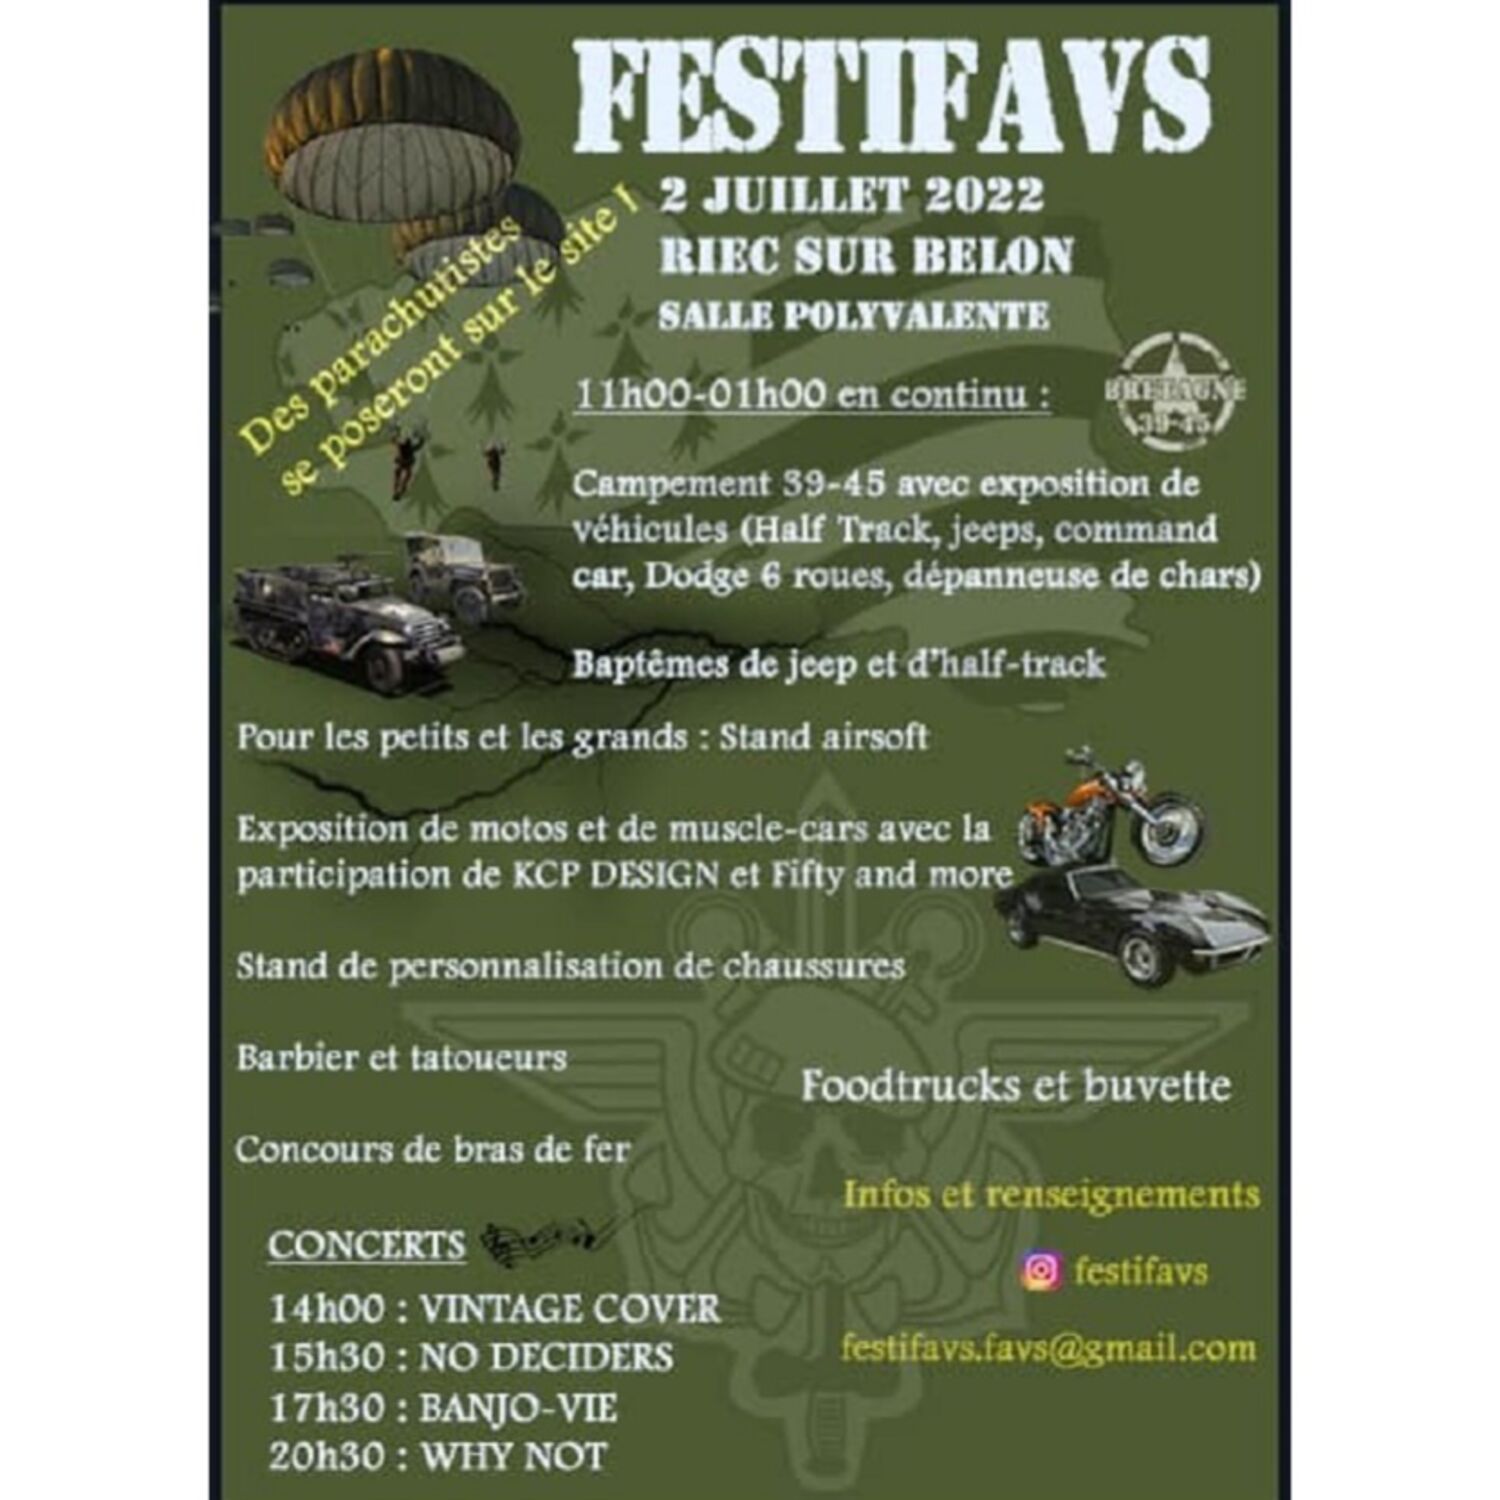 Riec sur Belon accueille la 2ème édition du FestiFavs le 2 juillet